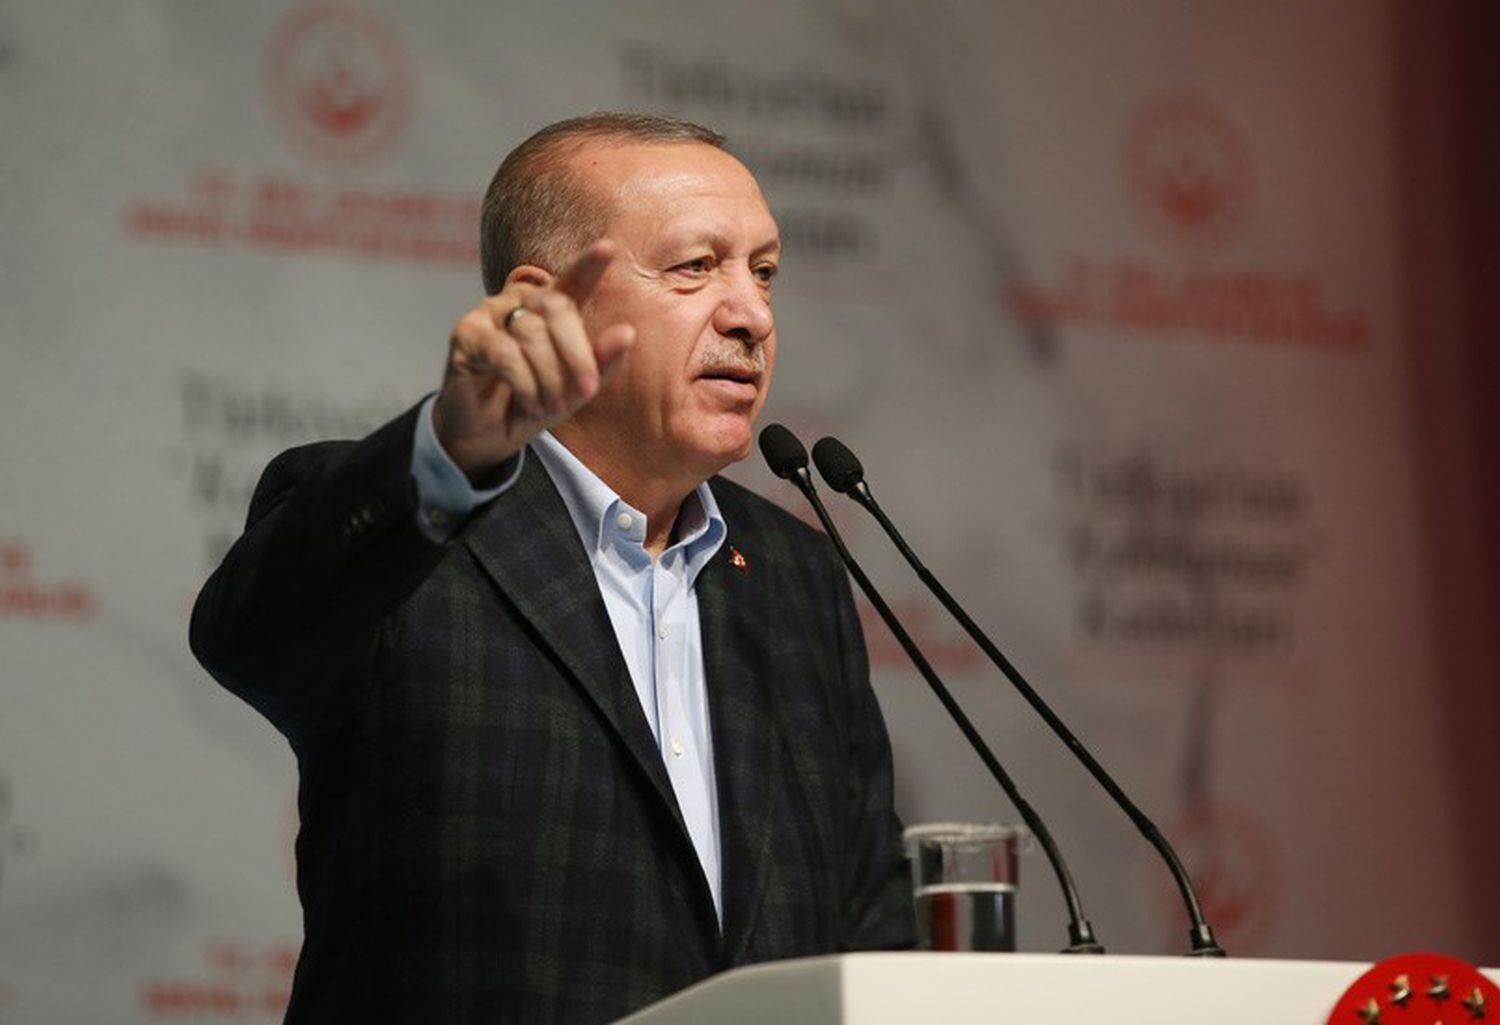 El presidente turco, Recep Tayyip Erdogan, durante un discurso el 8 de marzo en Estambul.